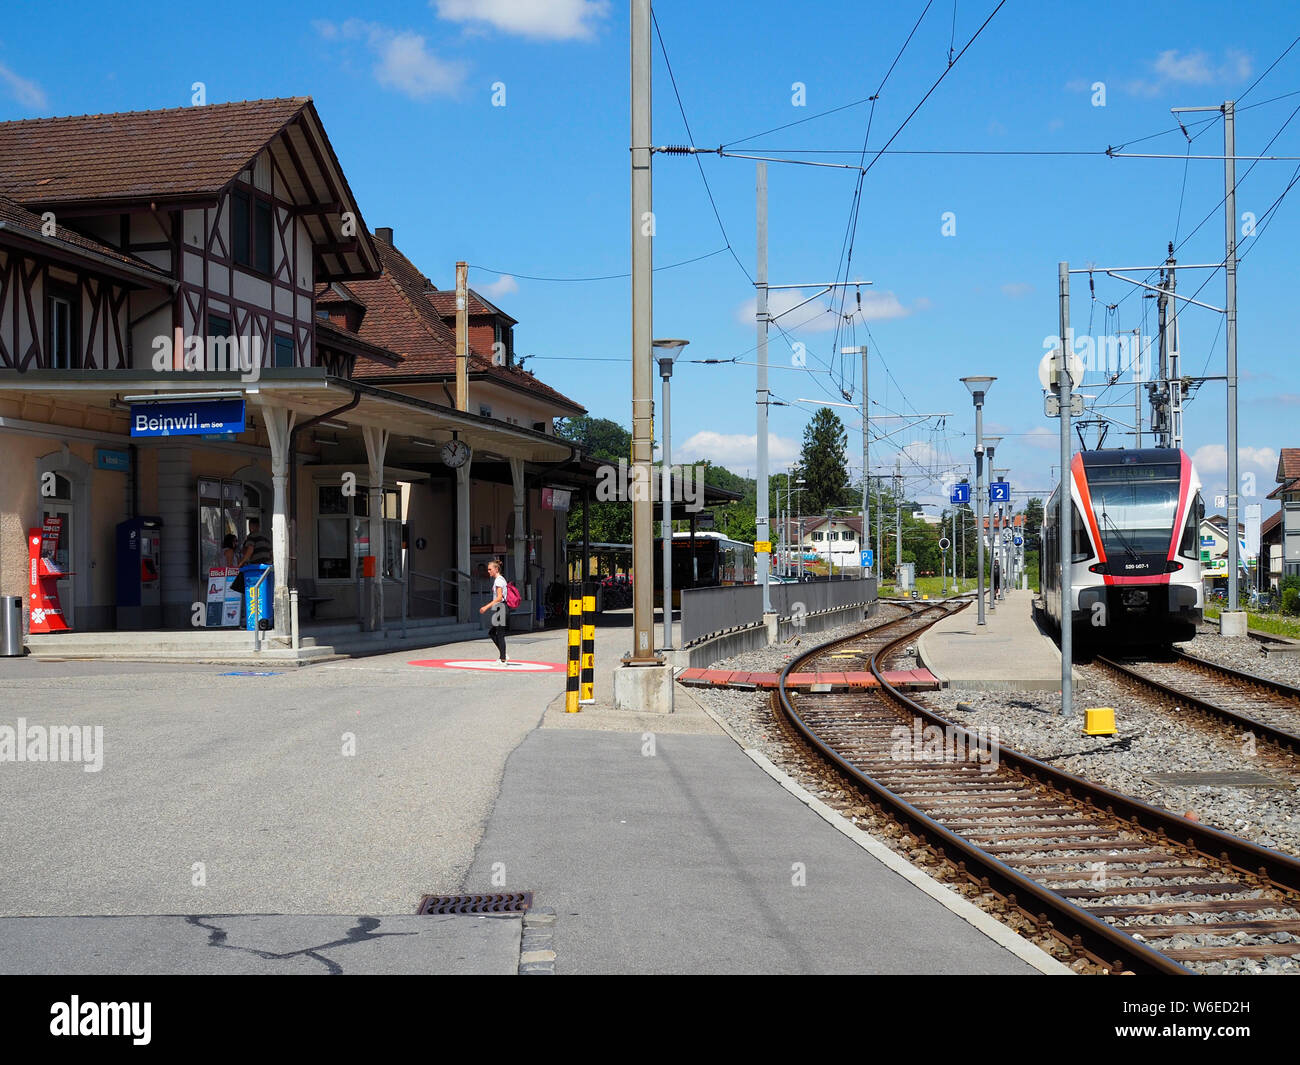 Bahnhof in Beinwil am See, Kanton Aargau, Schweiz, Europa Stock Photo